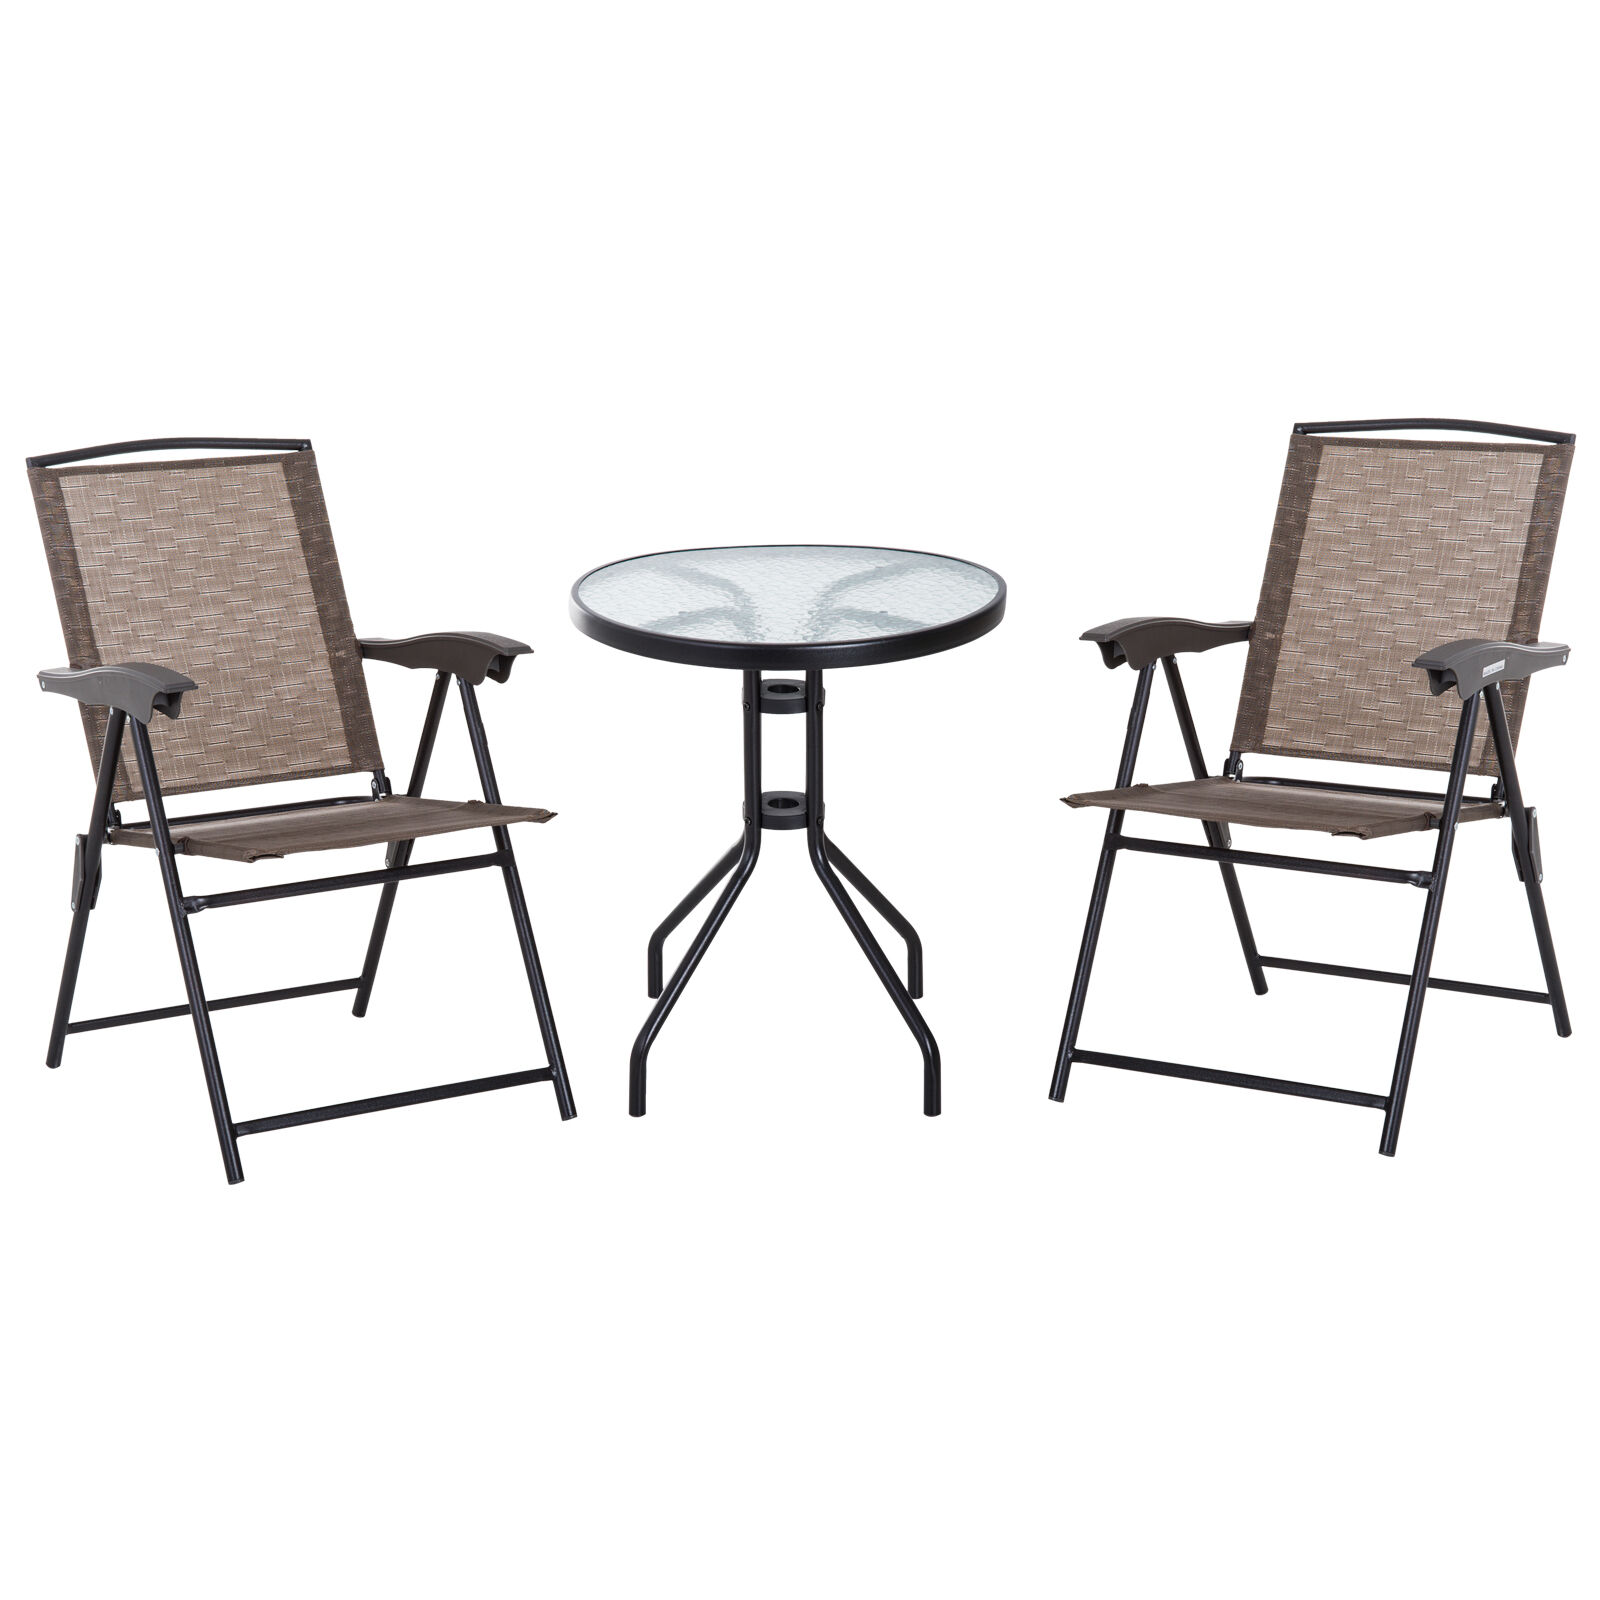 Outsunny Ensemble de jardin 3 pièces 2 chaises inclinables multi-positions pliables + table ronde verre trempé métal époxy textilène chocolat